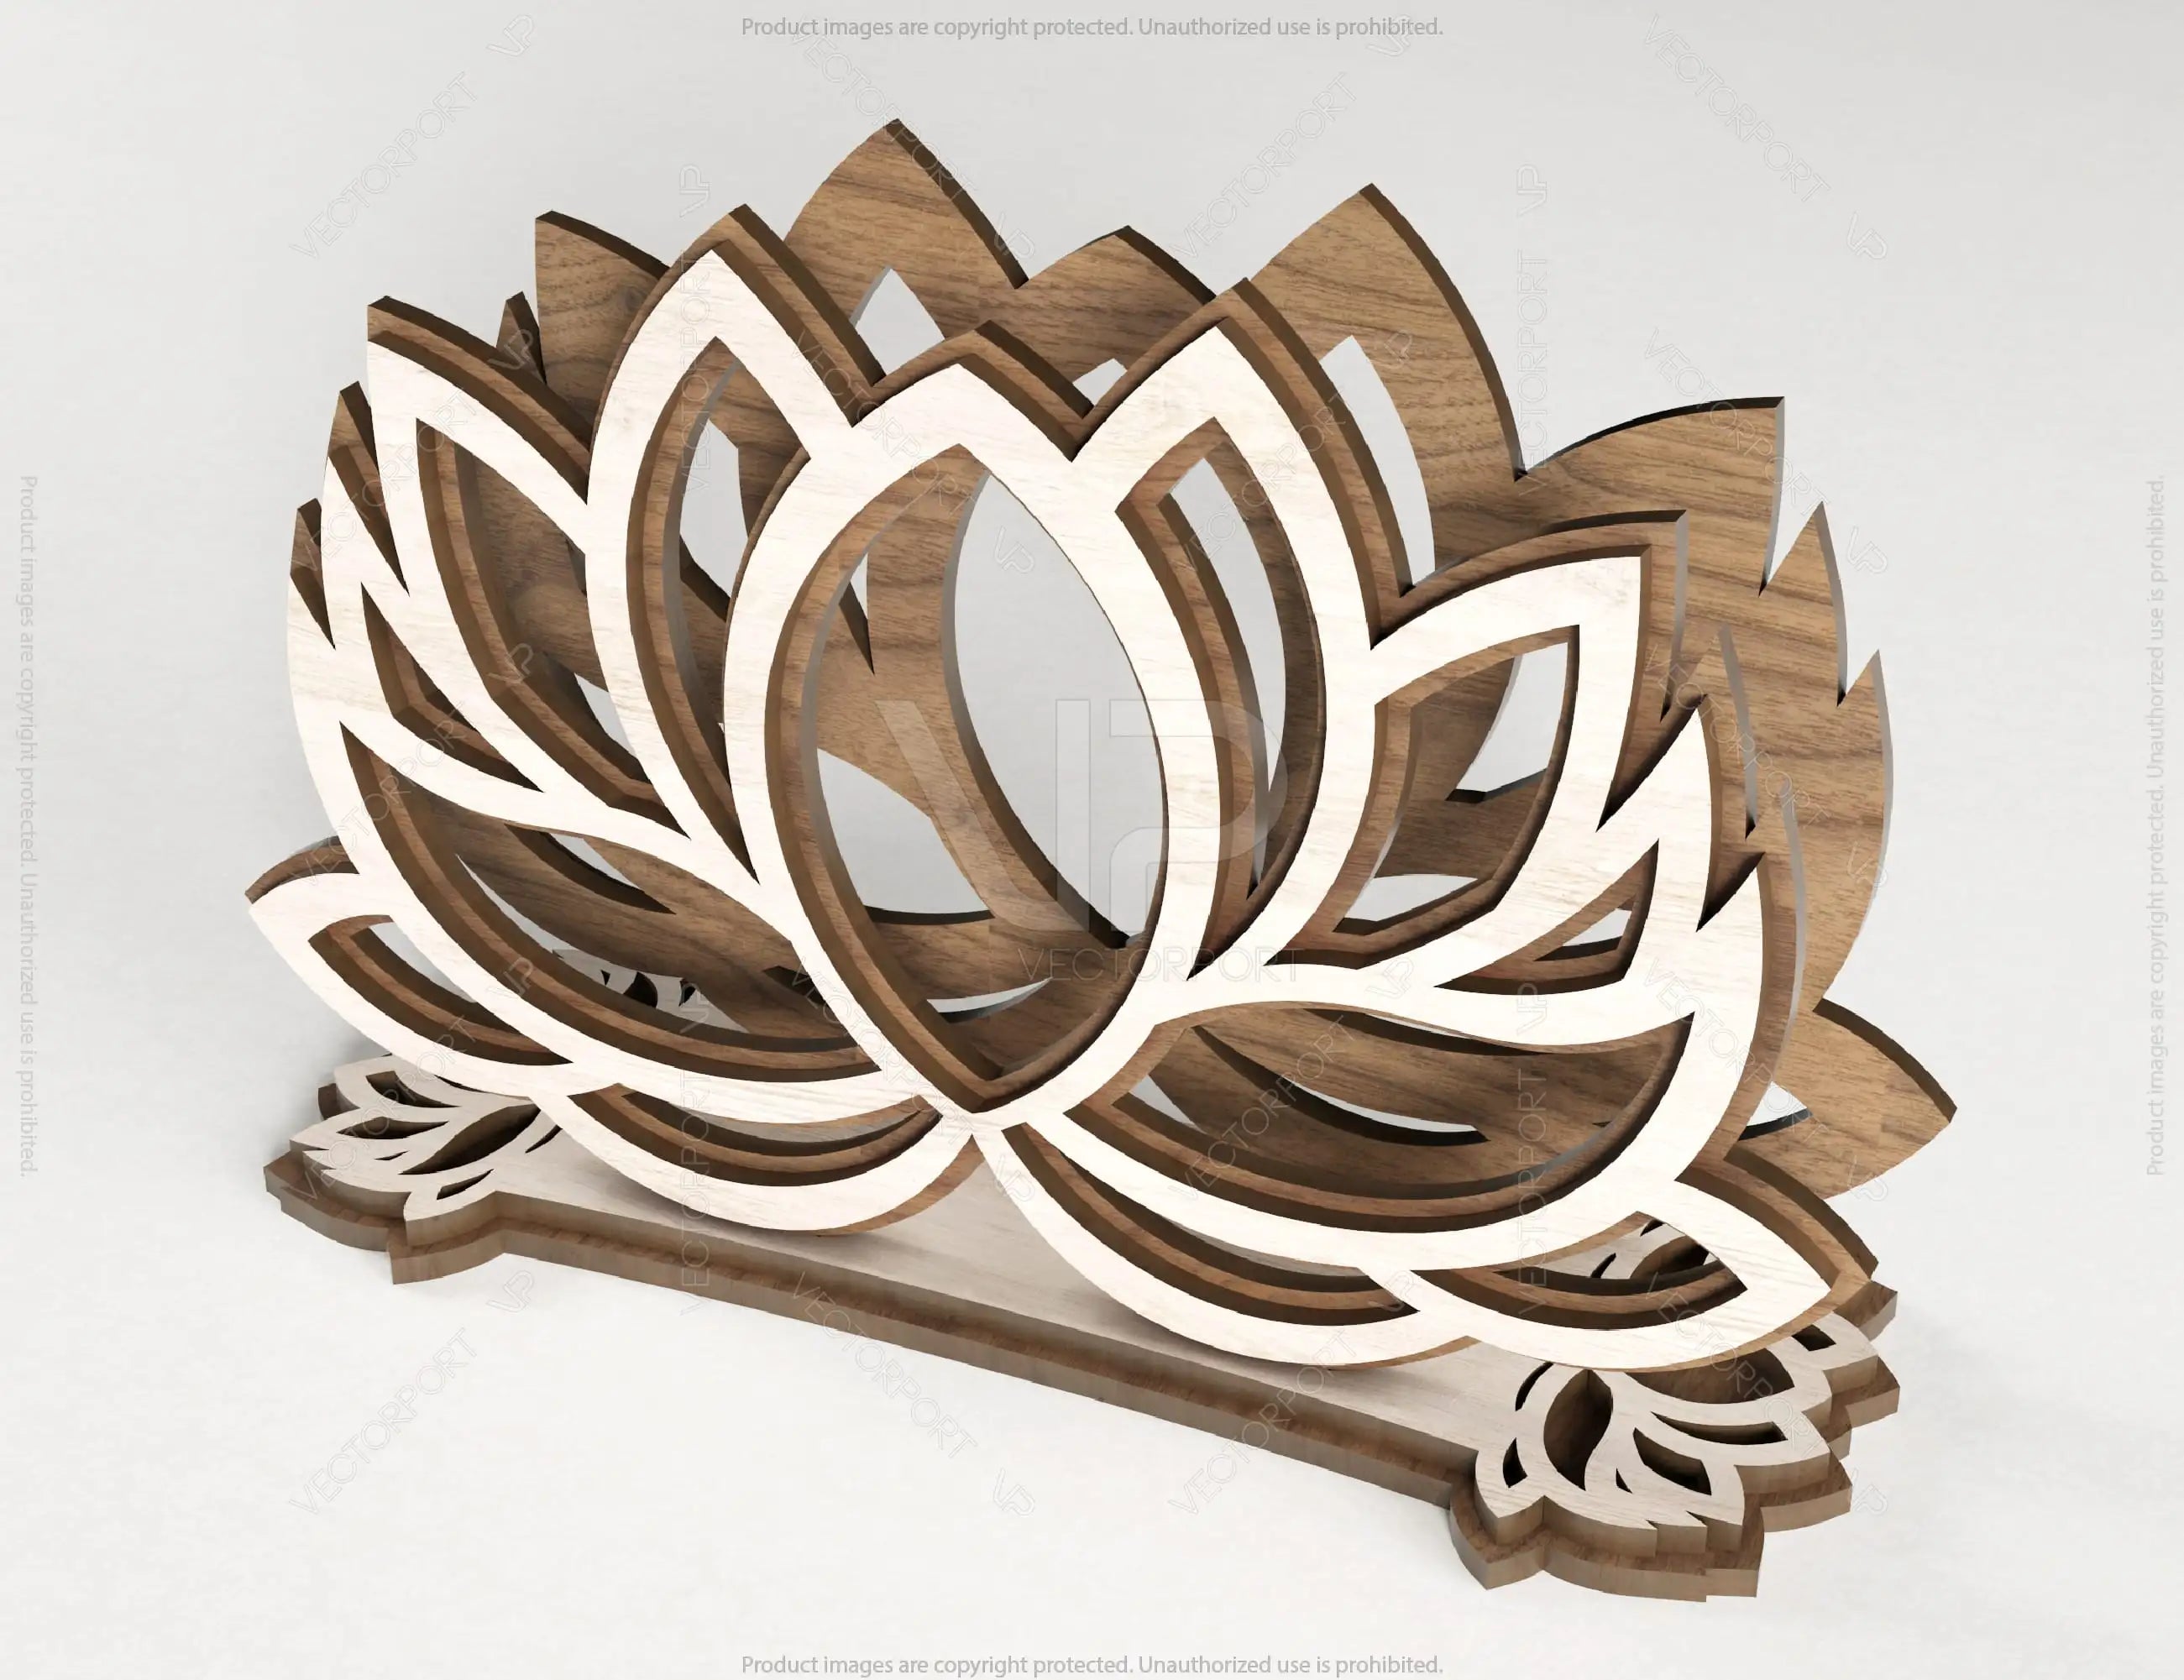 Lotus Flower Decorative Napkin Holder Laser Cut Heart Leaf Rose shape Tabletop wooden holder SVG |#164|